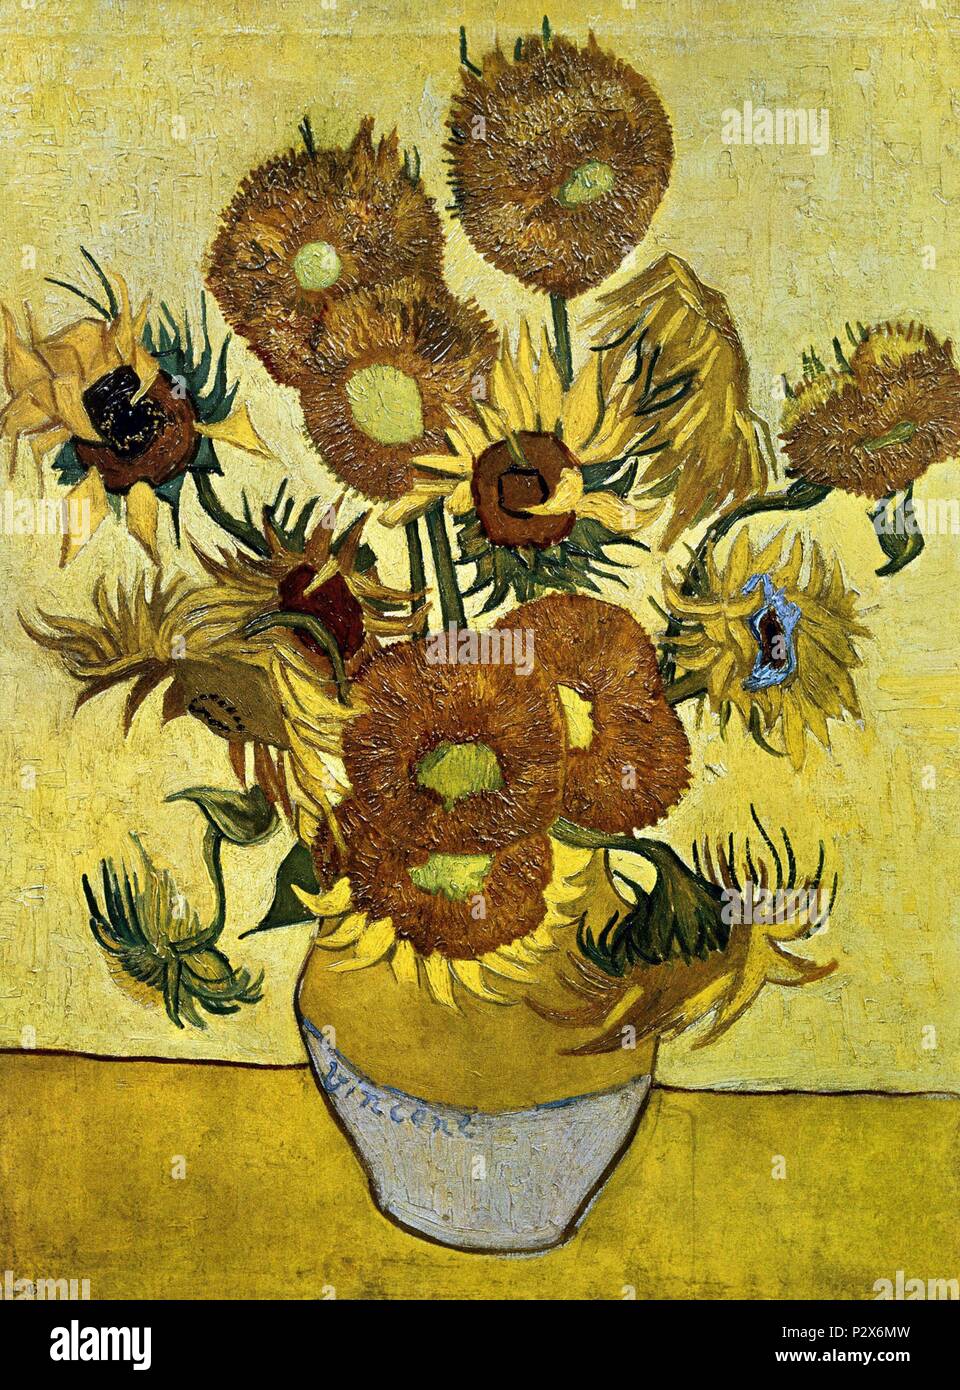 Niederländische Schule. Sonnenblumen. 1889. Öl auf Leinwand (95 x 73 cm). Amsterdam, Van Gogh Museum. Autor: Vincent van Gogh (1853-1890). Ort: Van Gogh Museum, Amsterdam, HOLANDA. Stockfoto